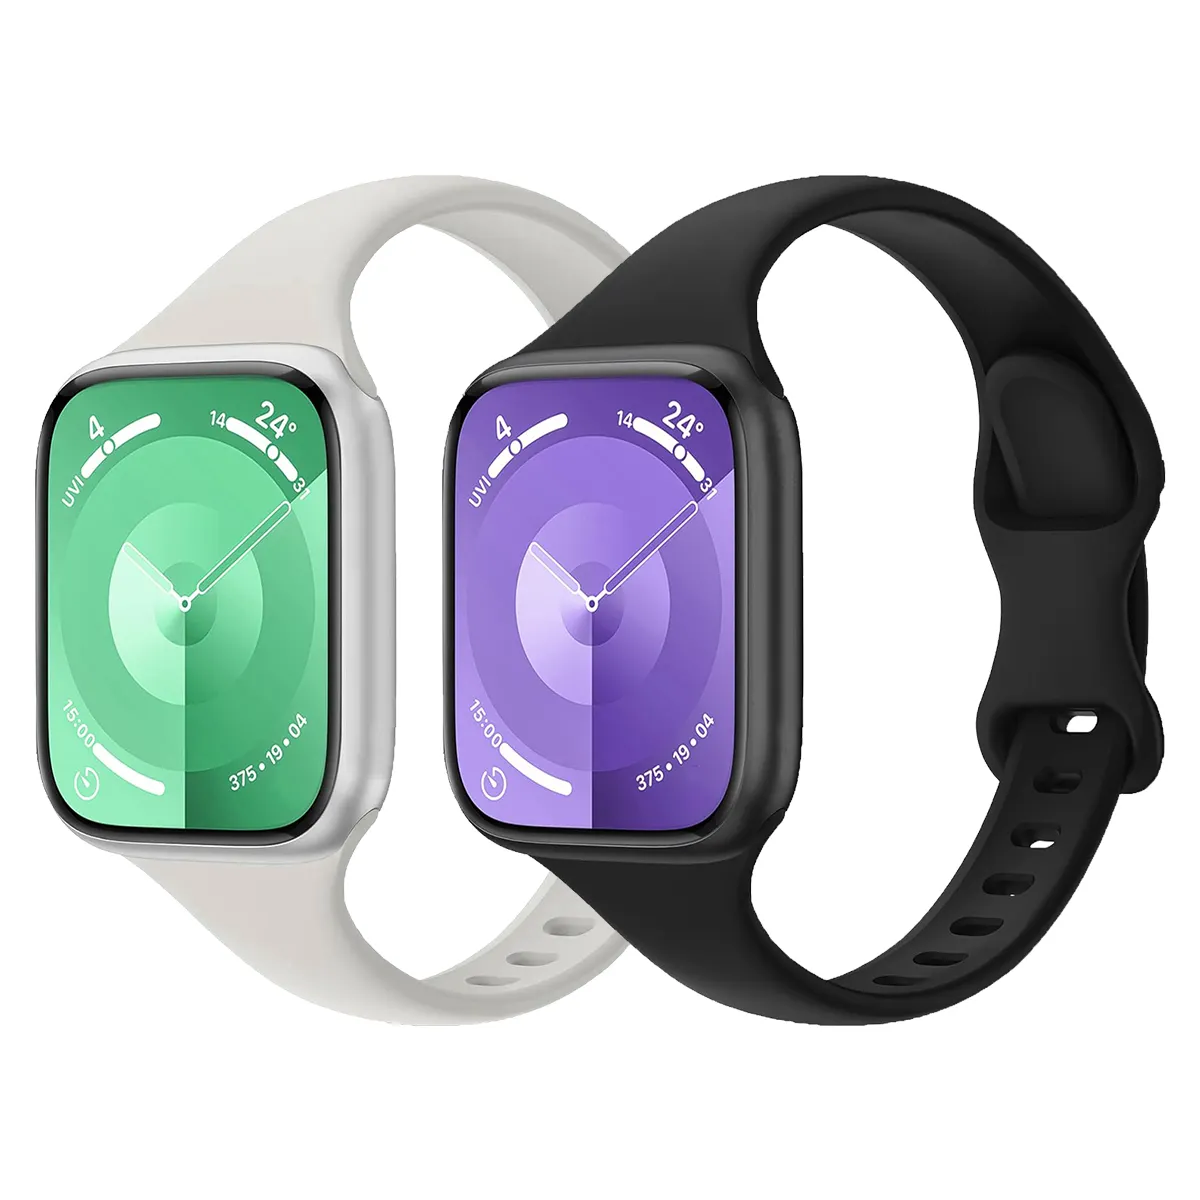 एप्पल घड़ी के लिए उपयुक्त स्मार्ट घड़ी श्रृंखला रिप्लेसमेंट स्ट्रैप फैशन रंग कंगन नरम सिलिकॉन घड़ी बैंड रबर का पट्टा